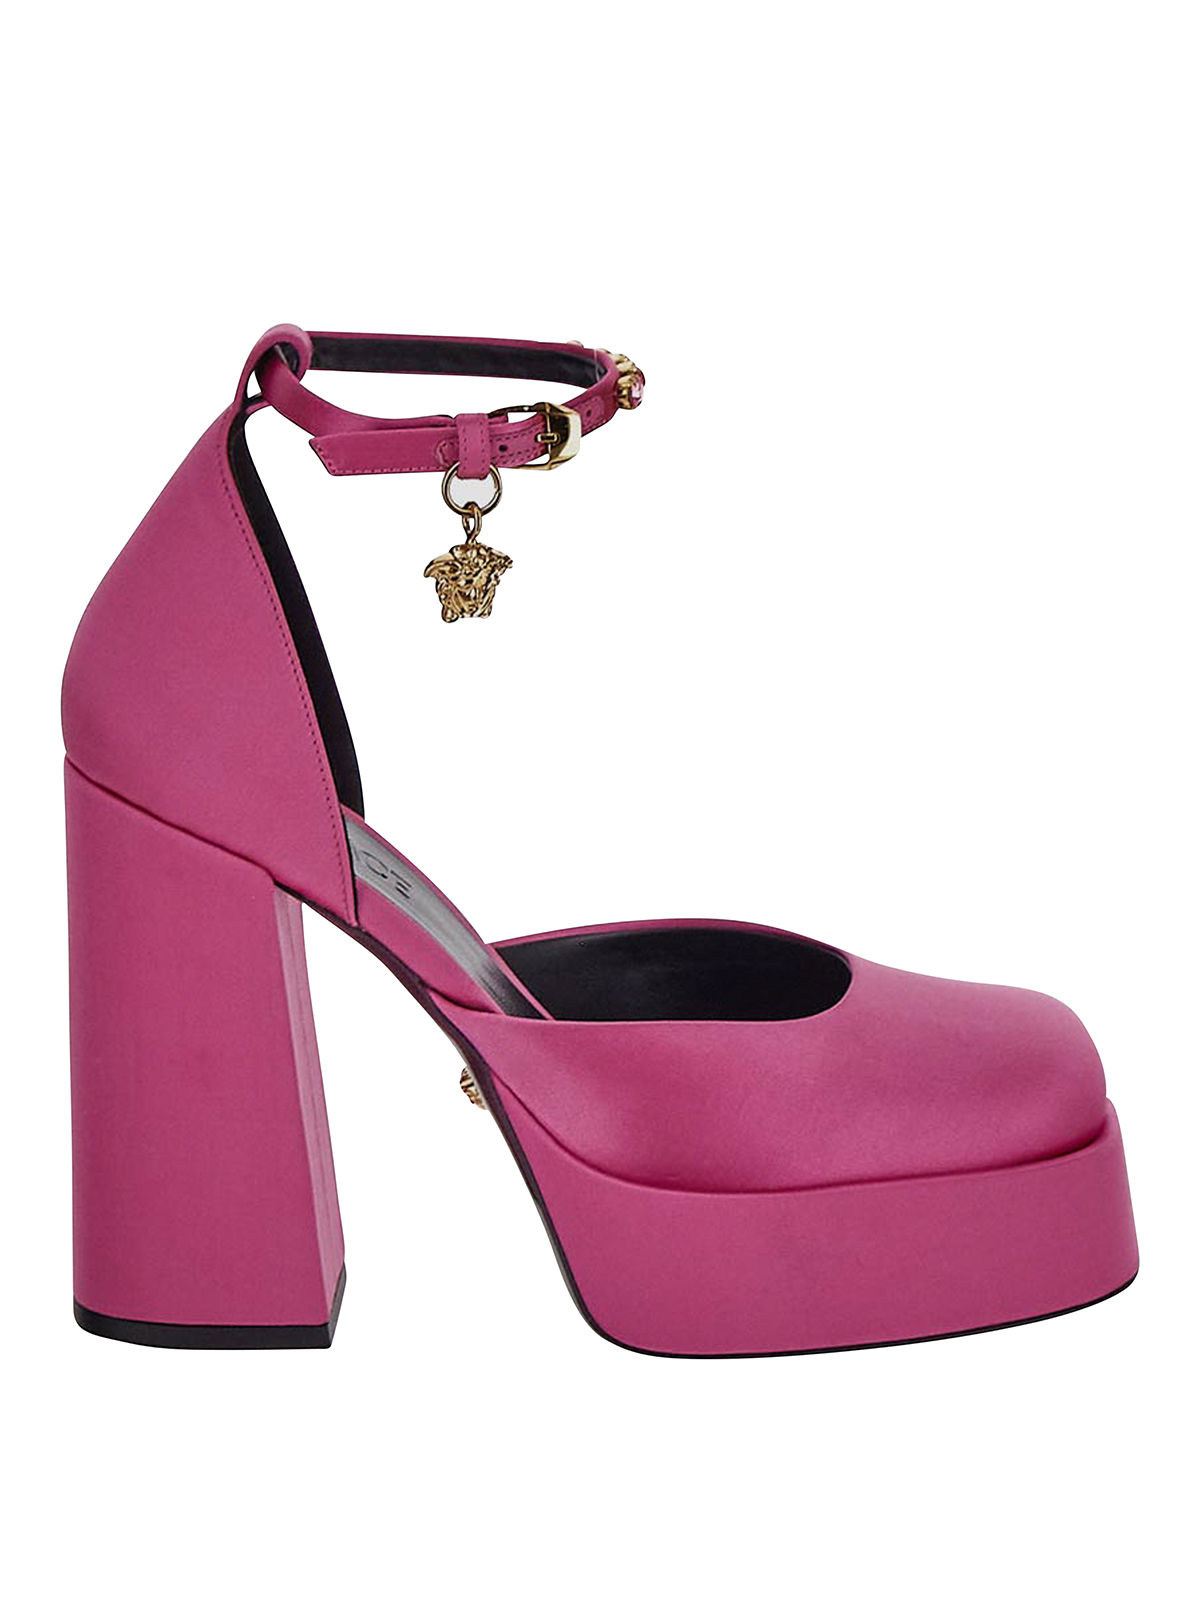 Versace With Heel In Fuchsia